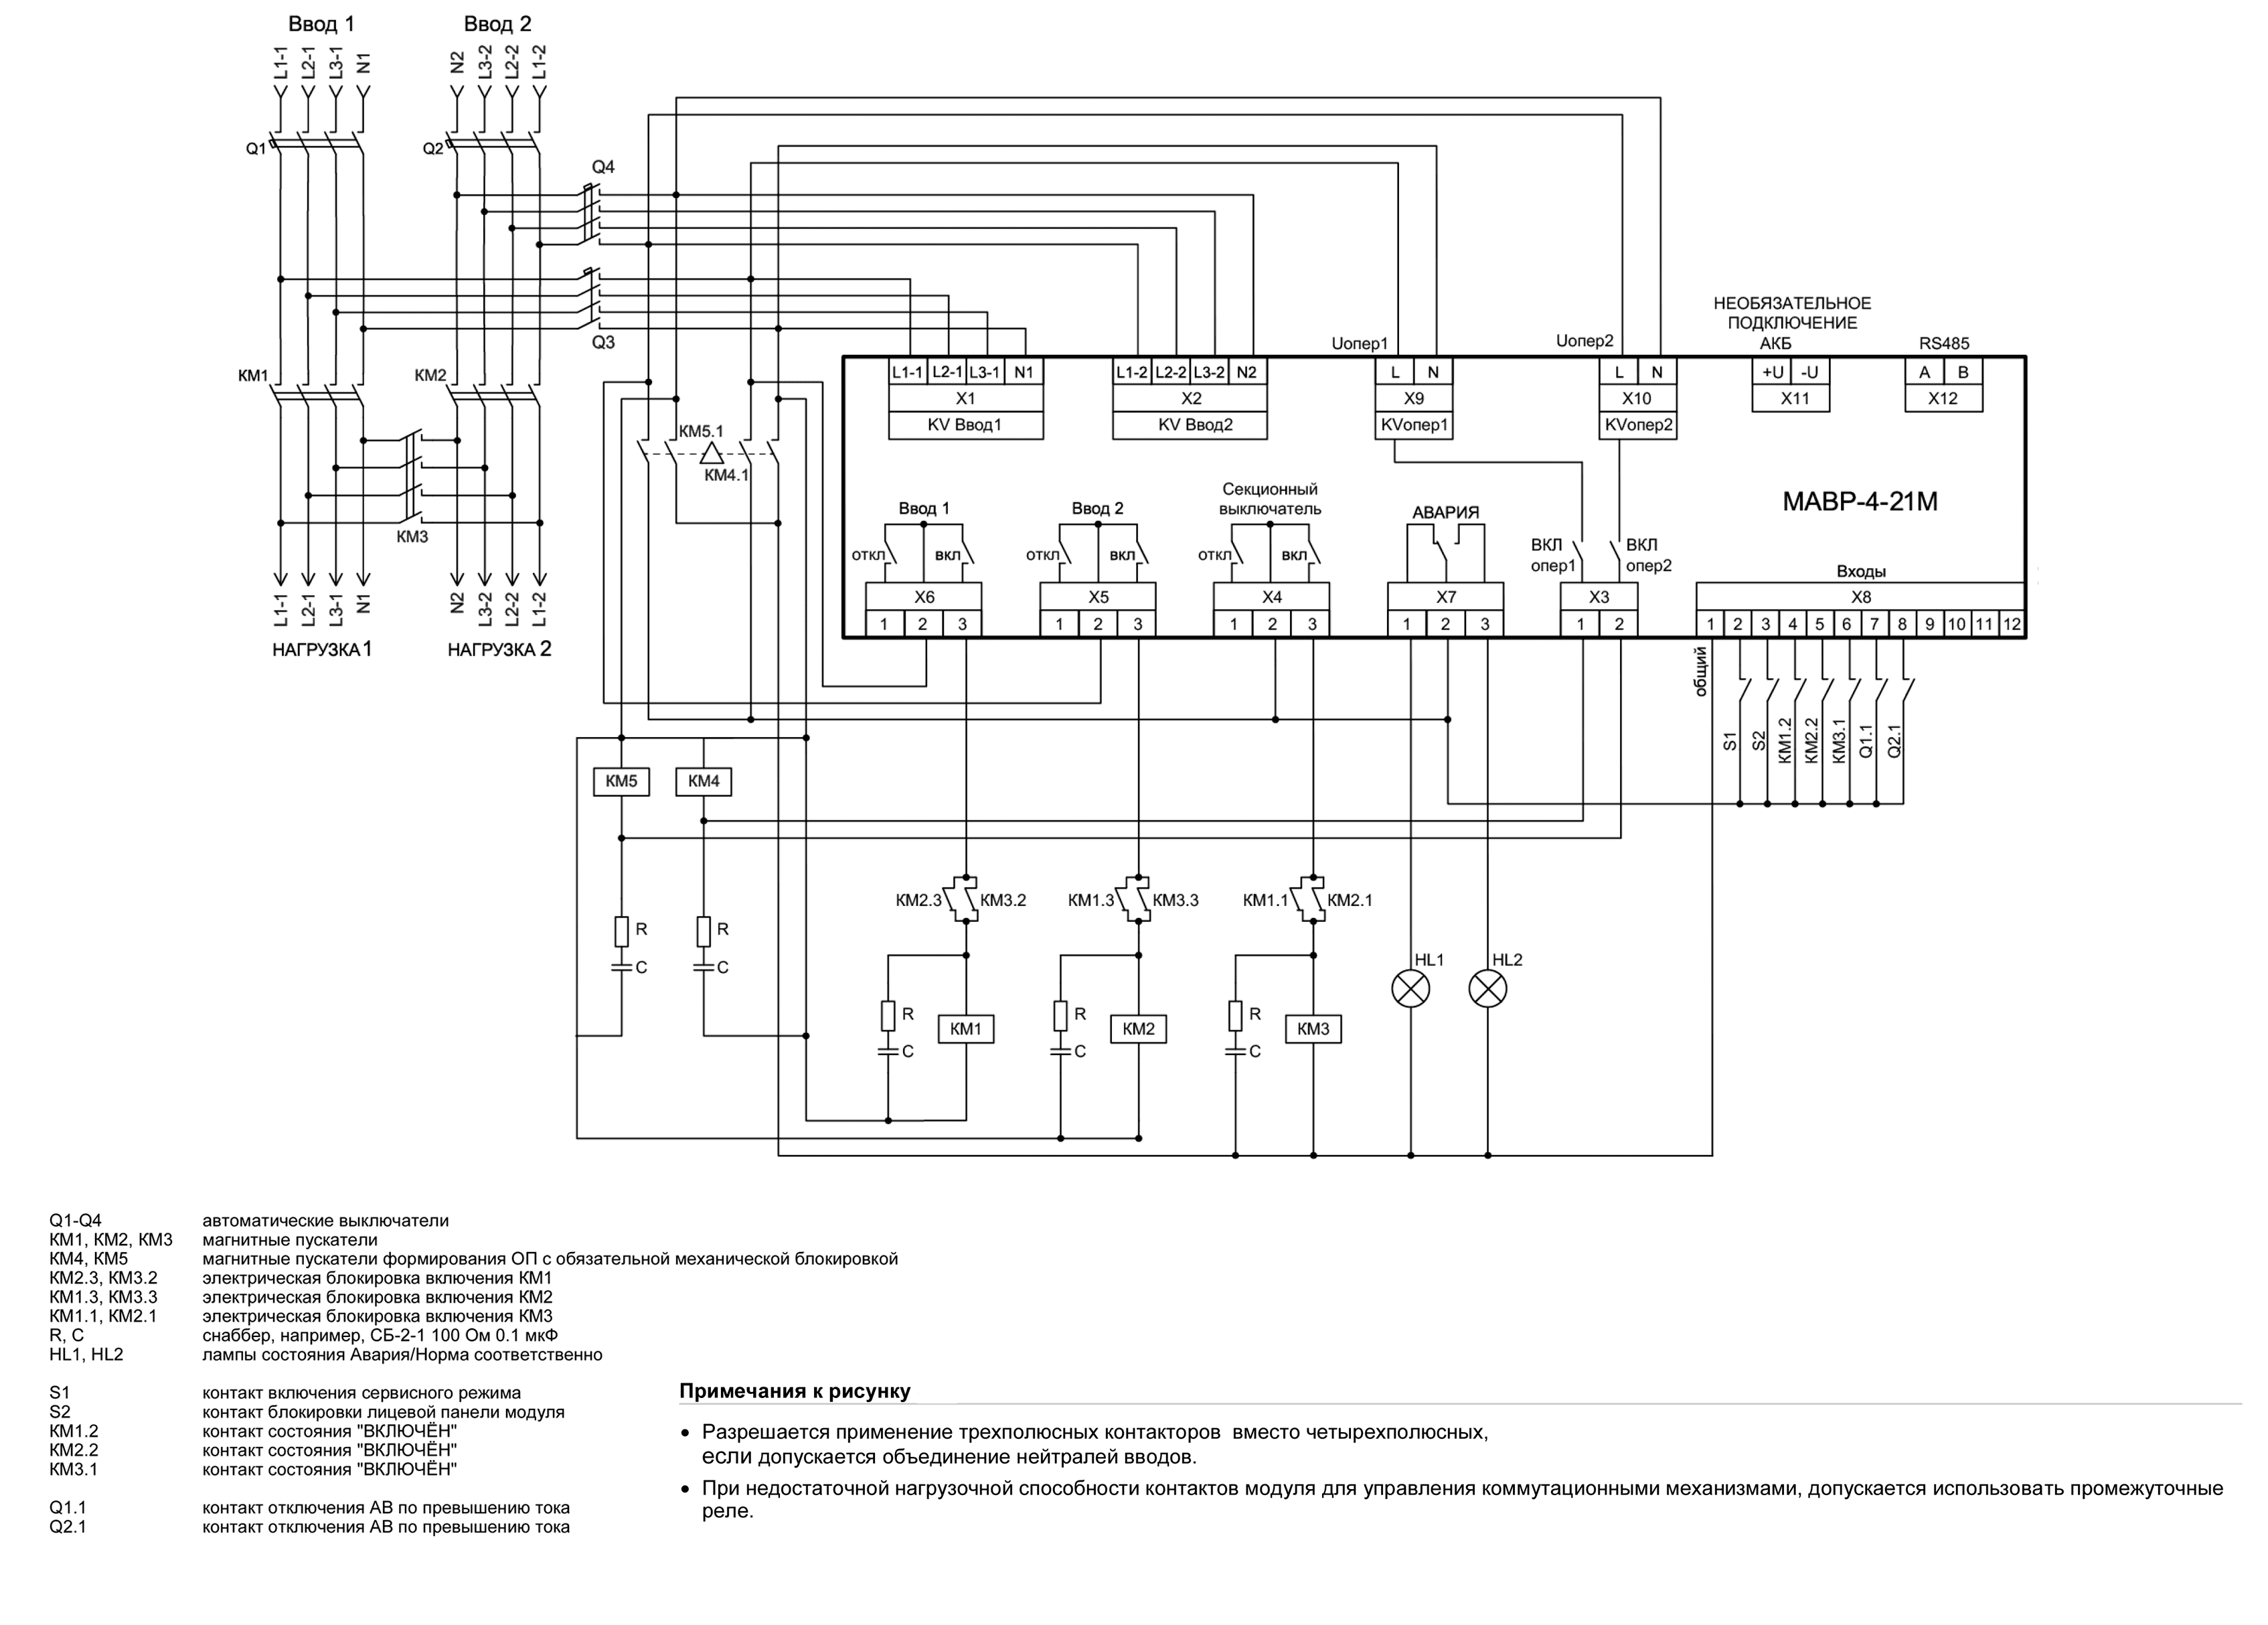 Схема управления с магнитными пускателями МАВР-4-21М